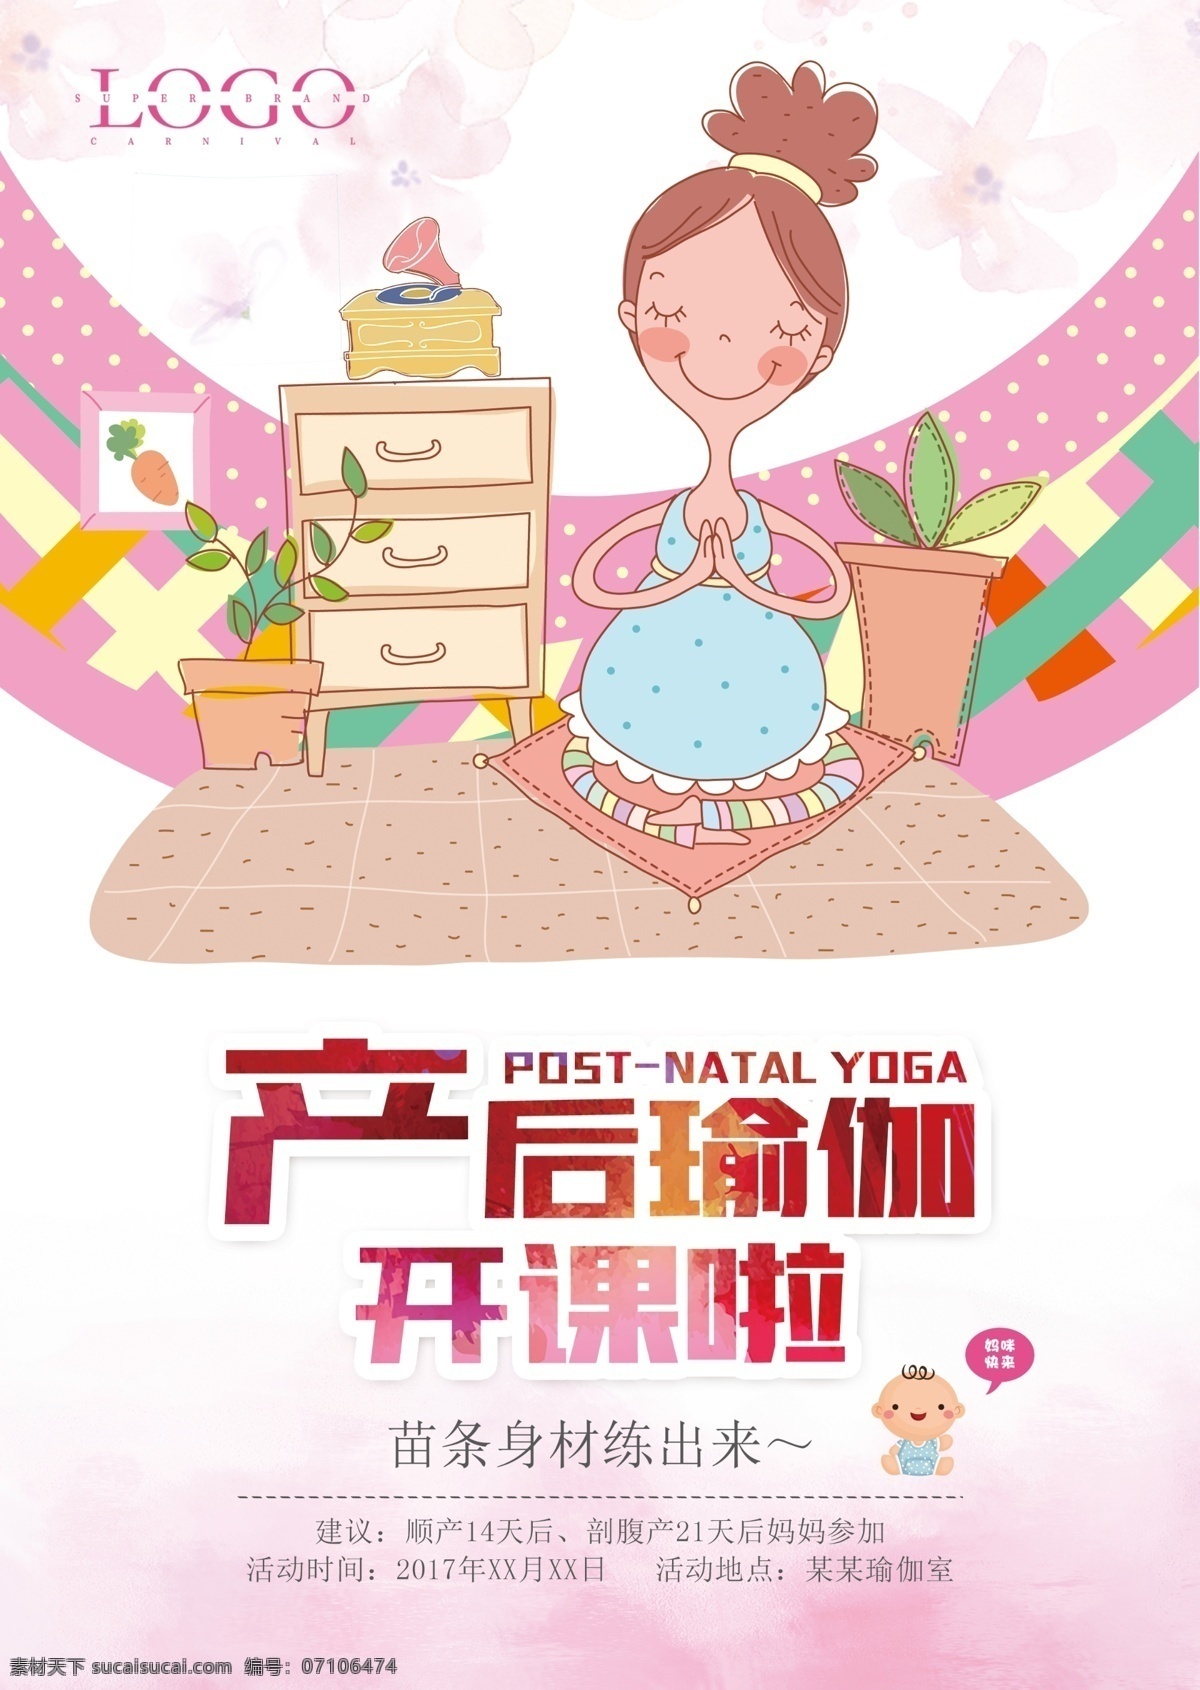 产后 瑜伽 开课 宣传单 产后瑜伽 签到 母婴 卡通 粉色背景 卡通人物 可爱 孕妇瑜伽 宣传单设计